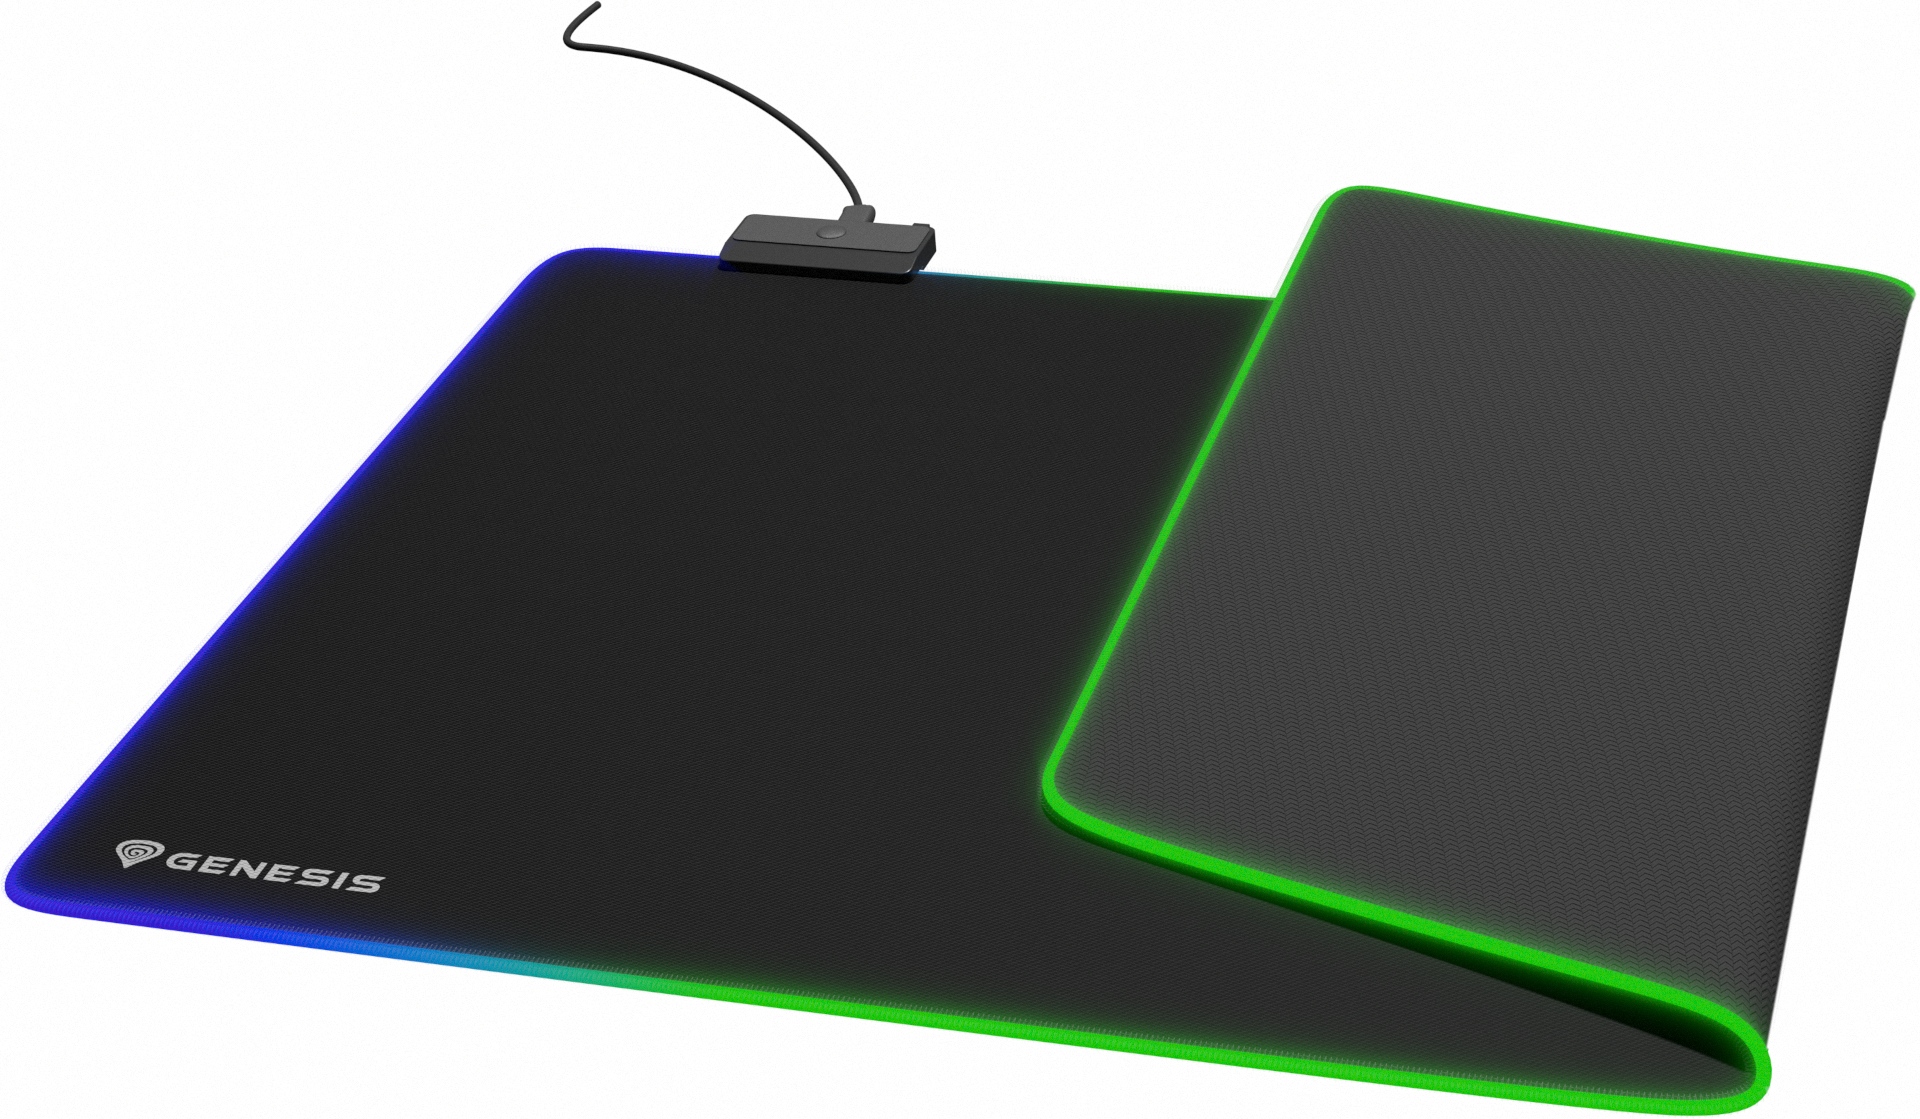 Genesis Boron 500 XXL RGB, czyli tania i duża podkładka na biurko